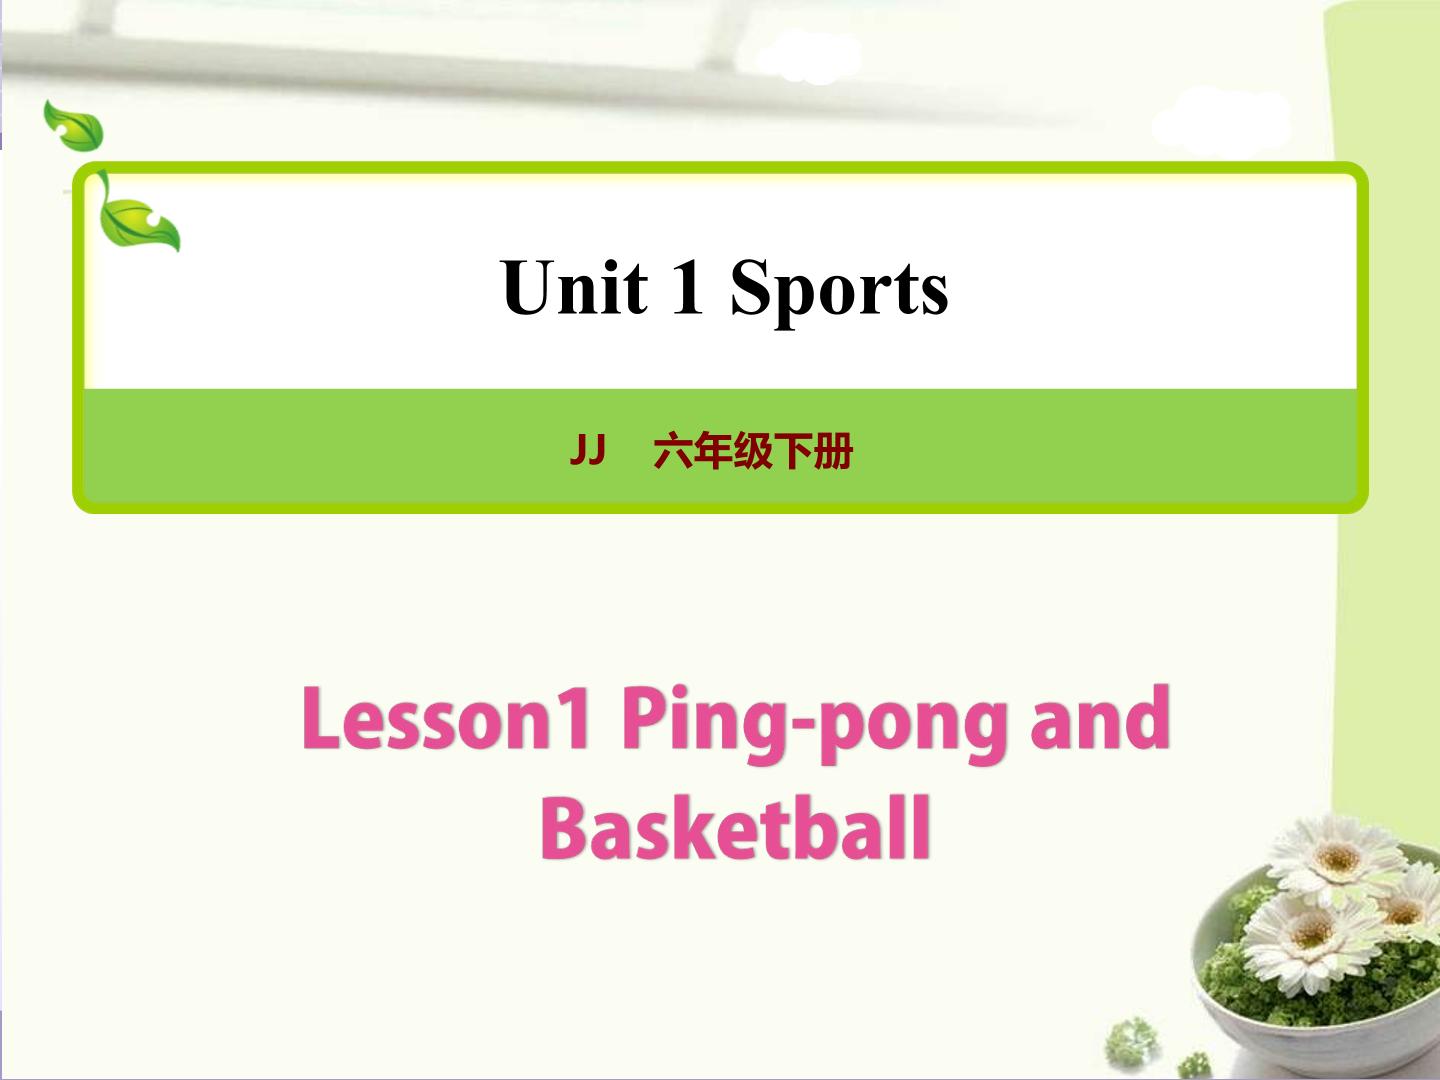 Ping-pong and Basketball